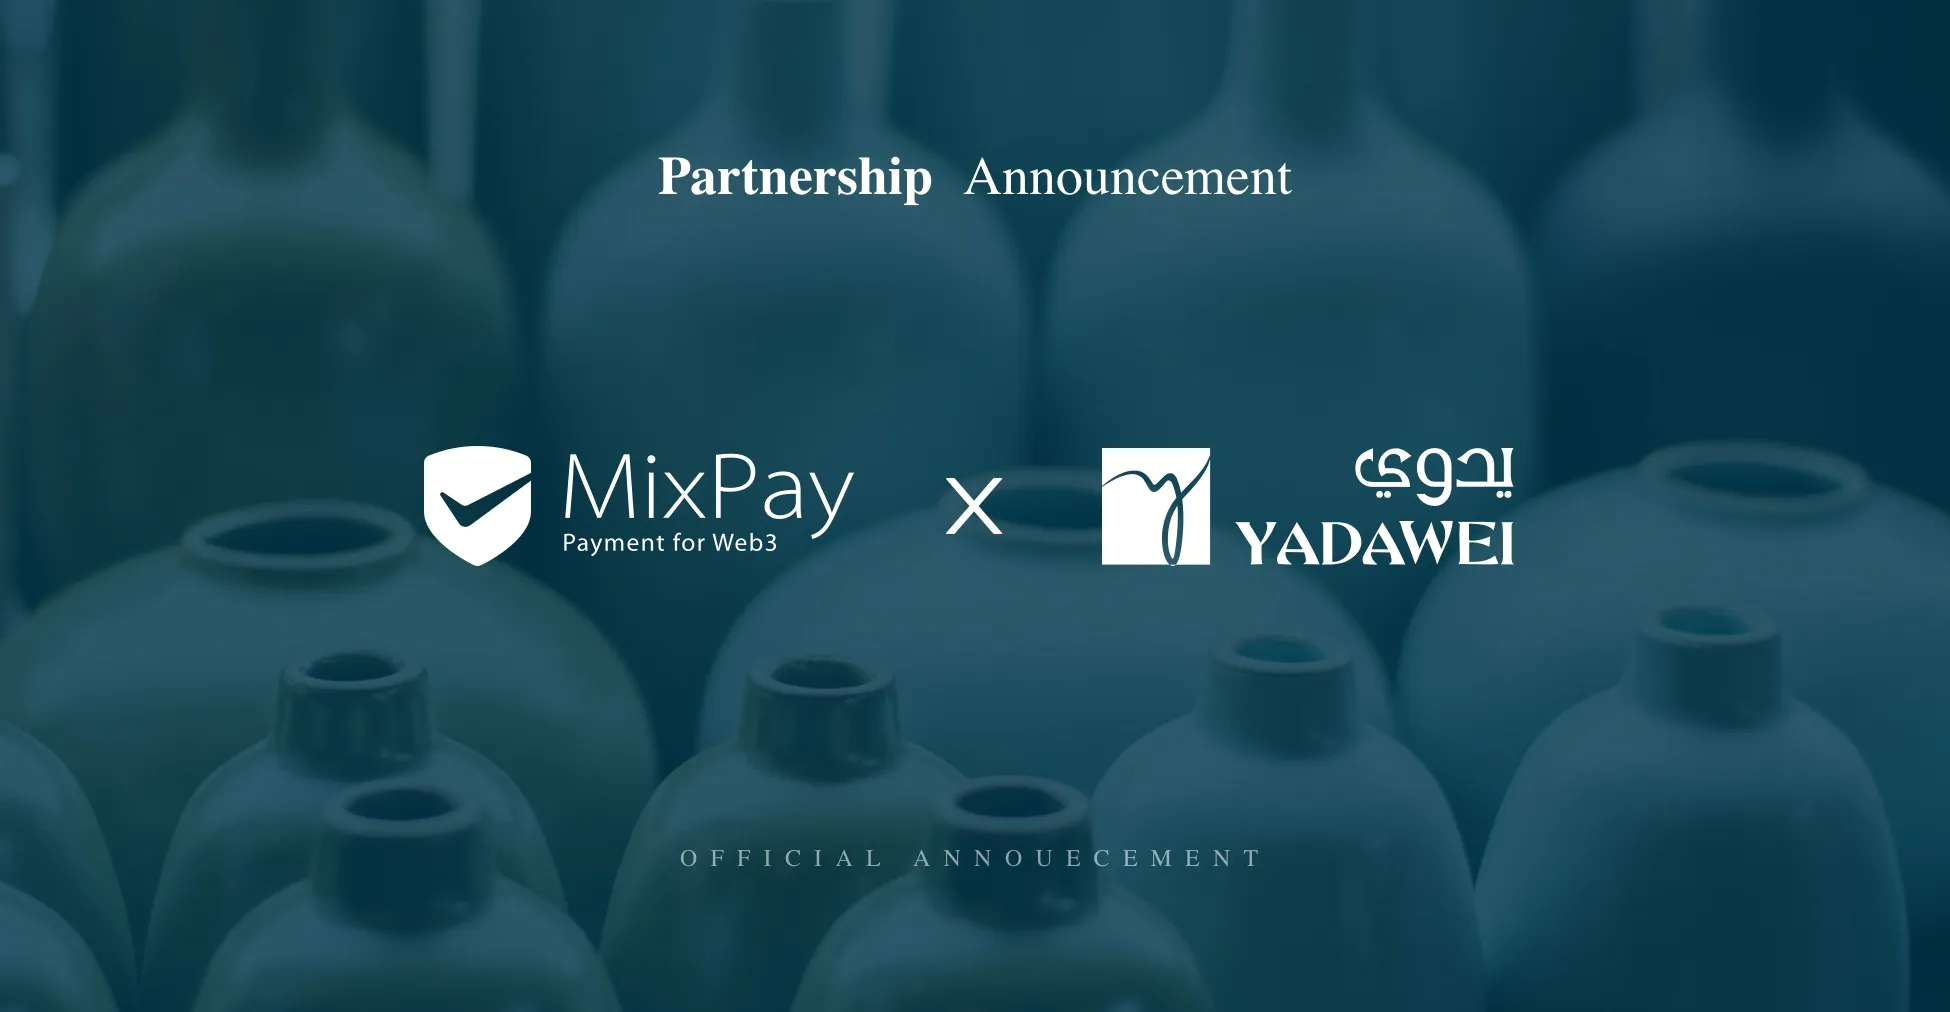 MixPay&Yadawei Partnership